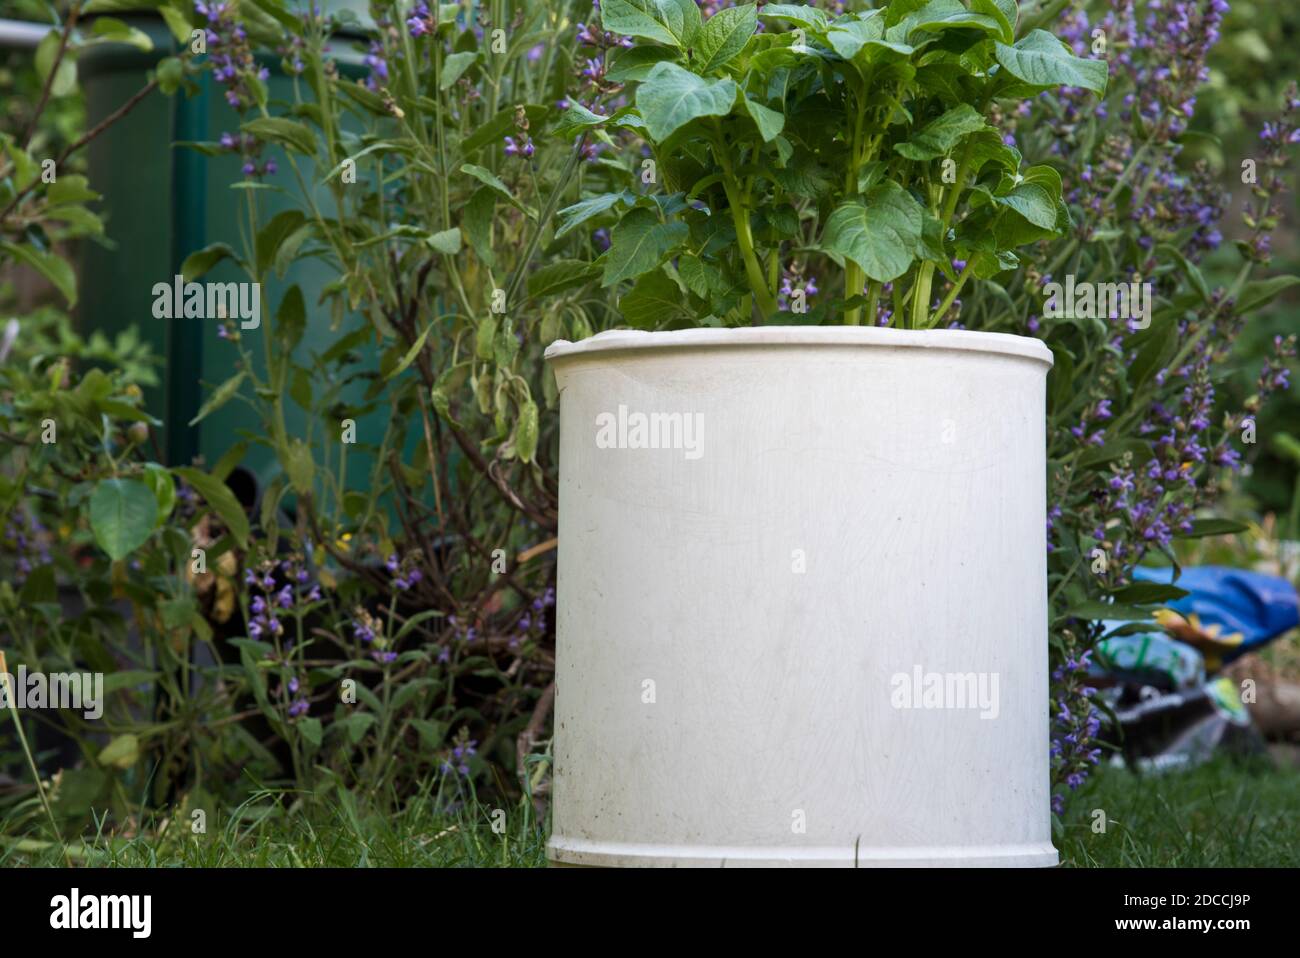 Planta de papa creciendo en un recipiente blanco Foto de stock